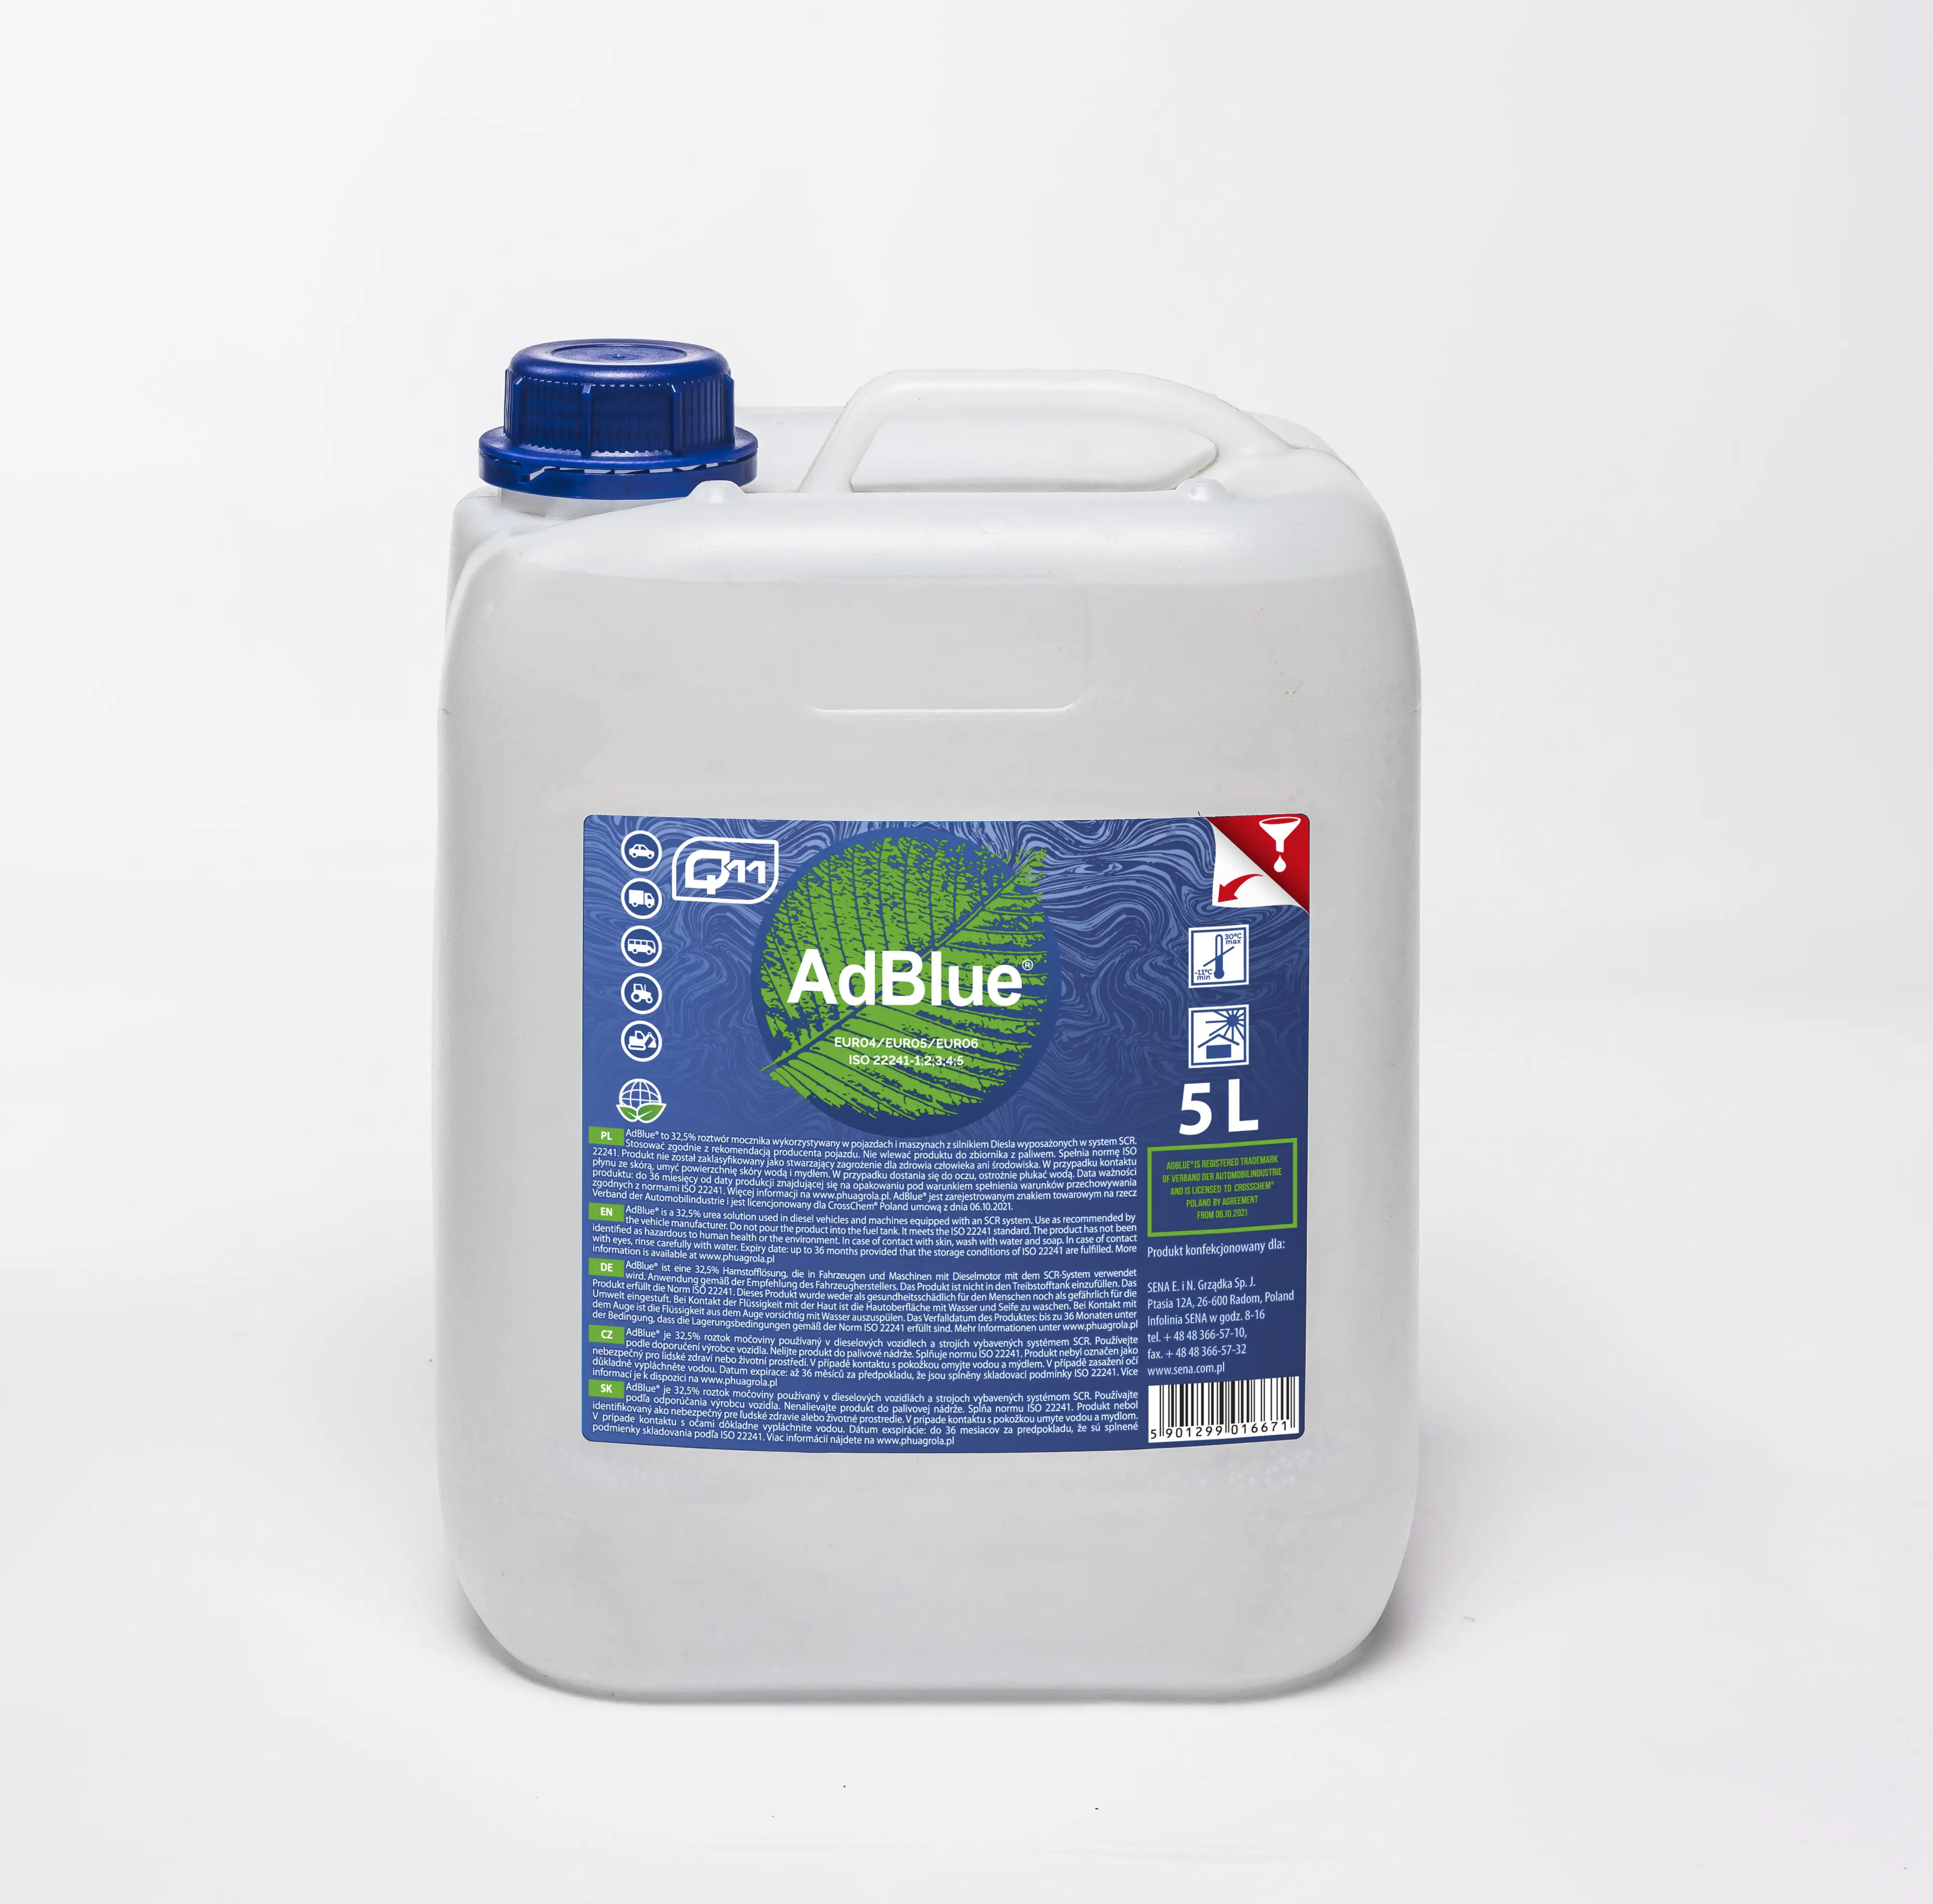 AdBlue® Kraftstoffzusatz 5L hochreine Harnstofflösung kaufen